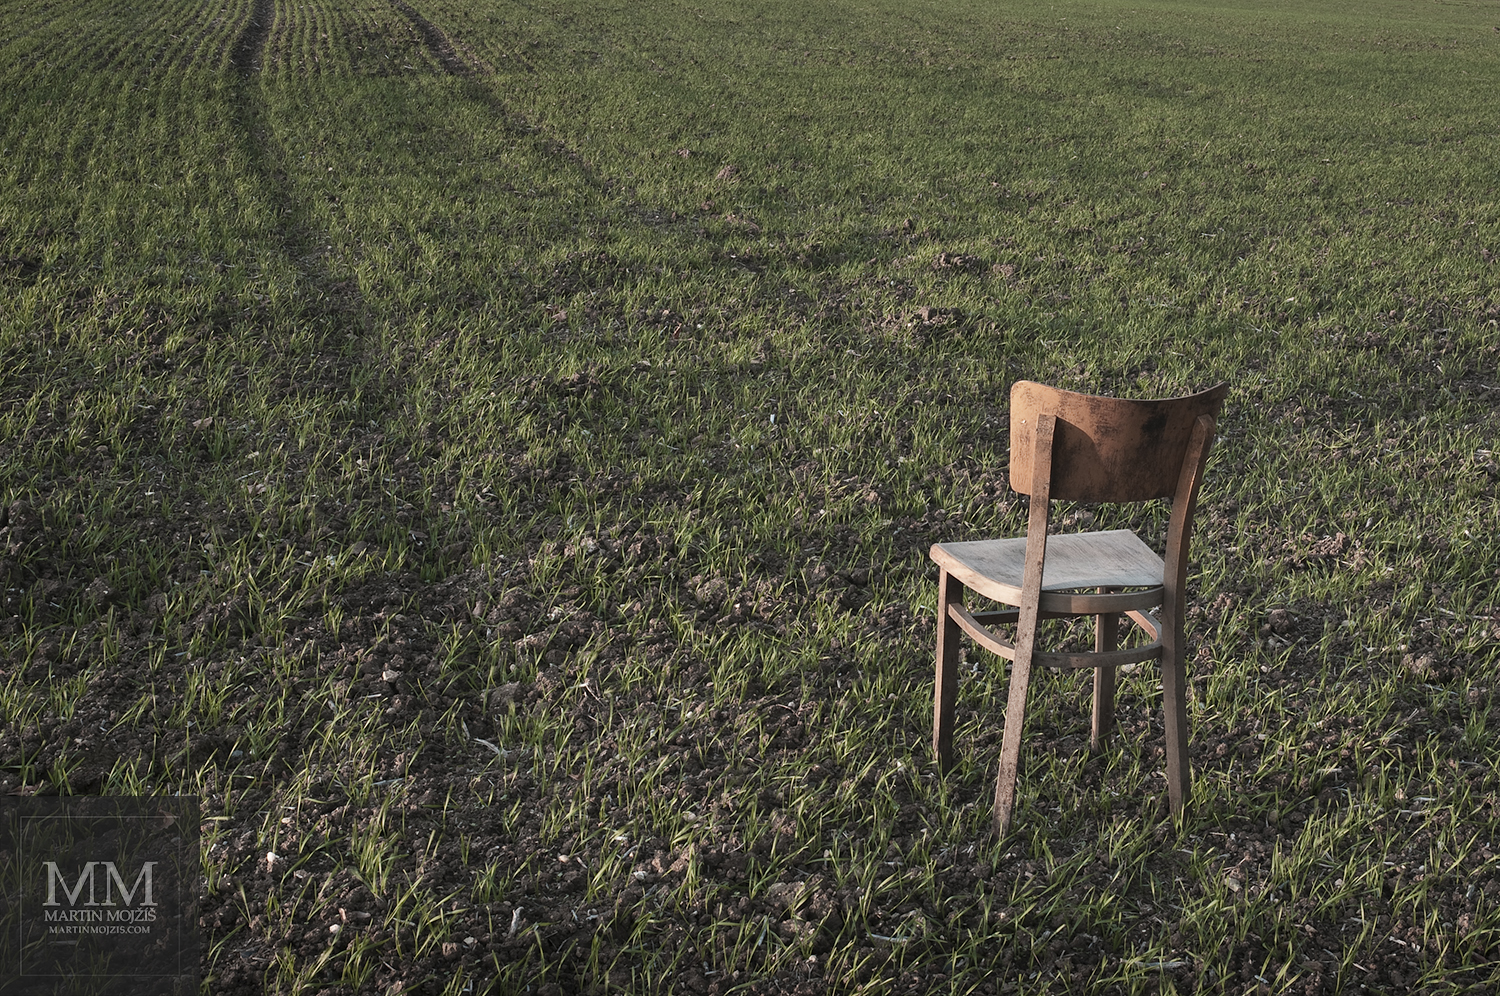 Židle stojící na poli. Umělecká fotografie Martina Mojžíše s názvem ŽIDLE I.